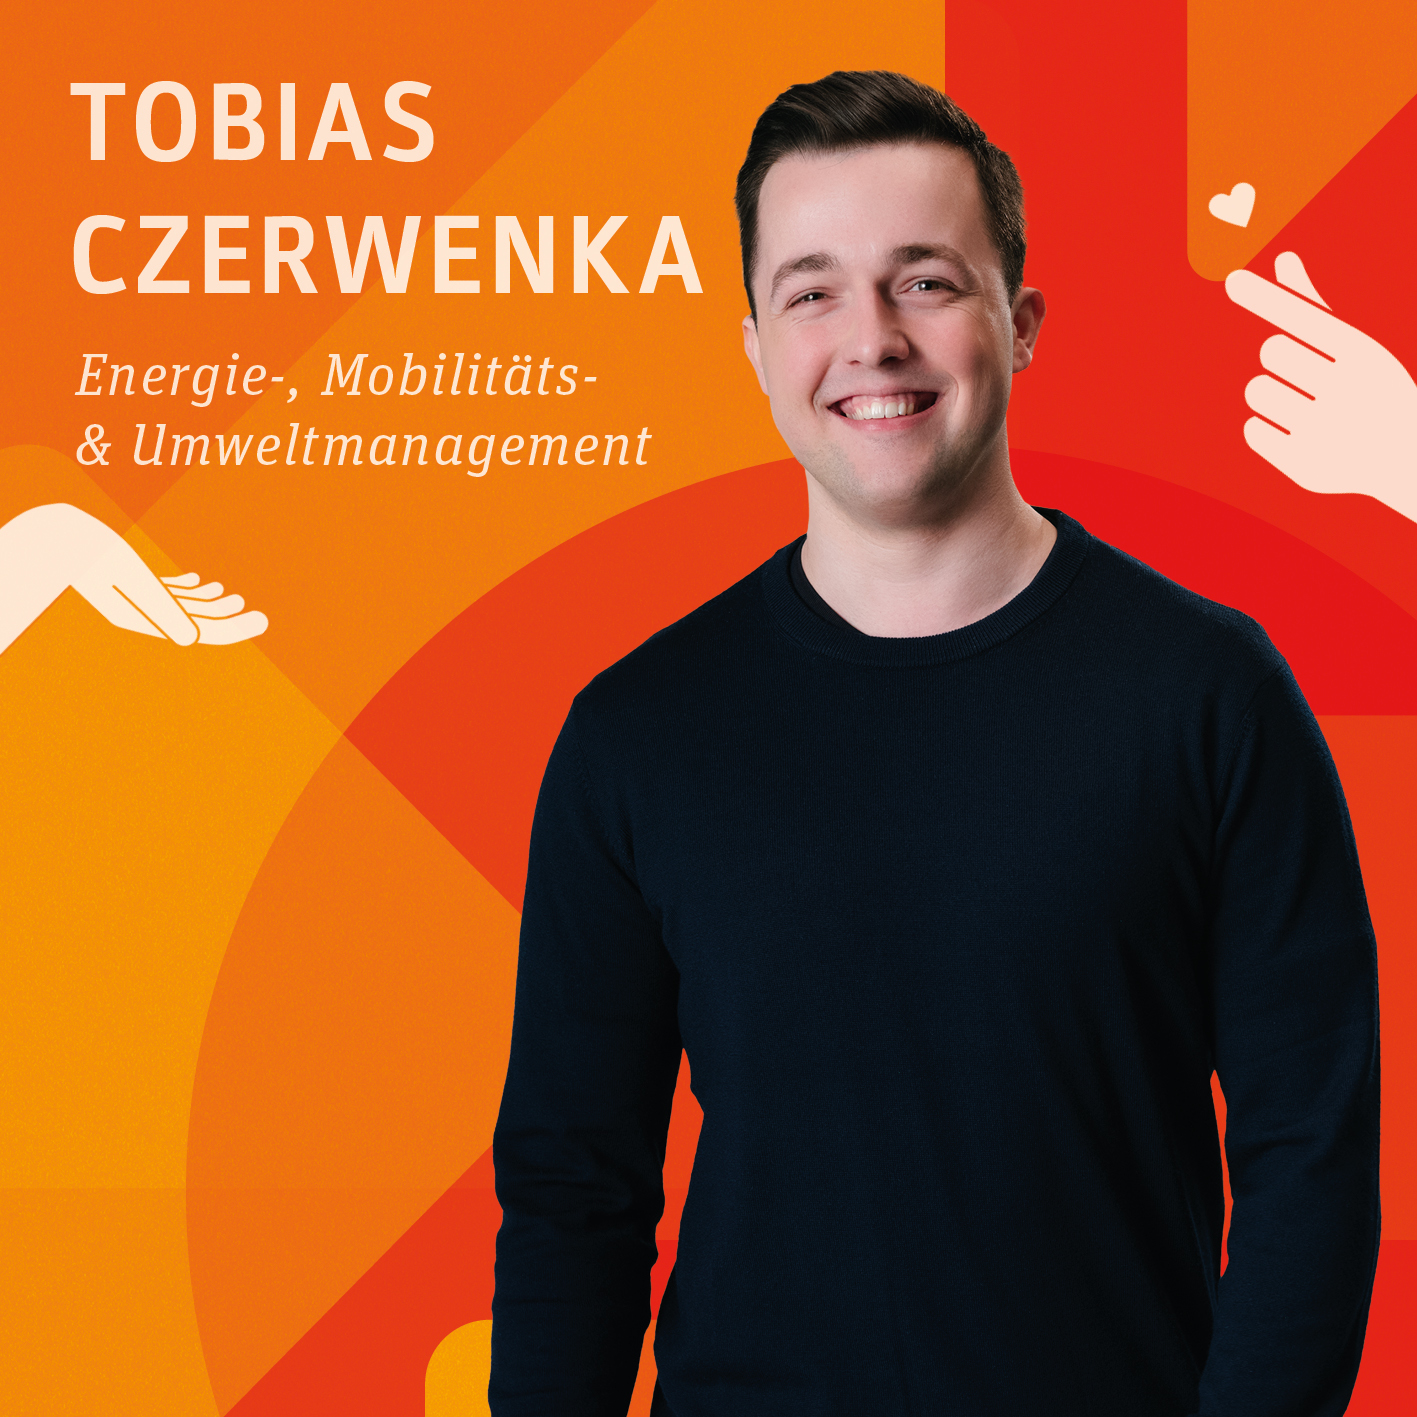 Tobias Czerwenka studiert Energie-, Mobilitäts- und Umweltmanagement.